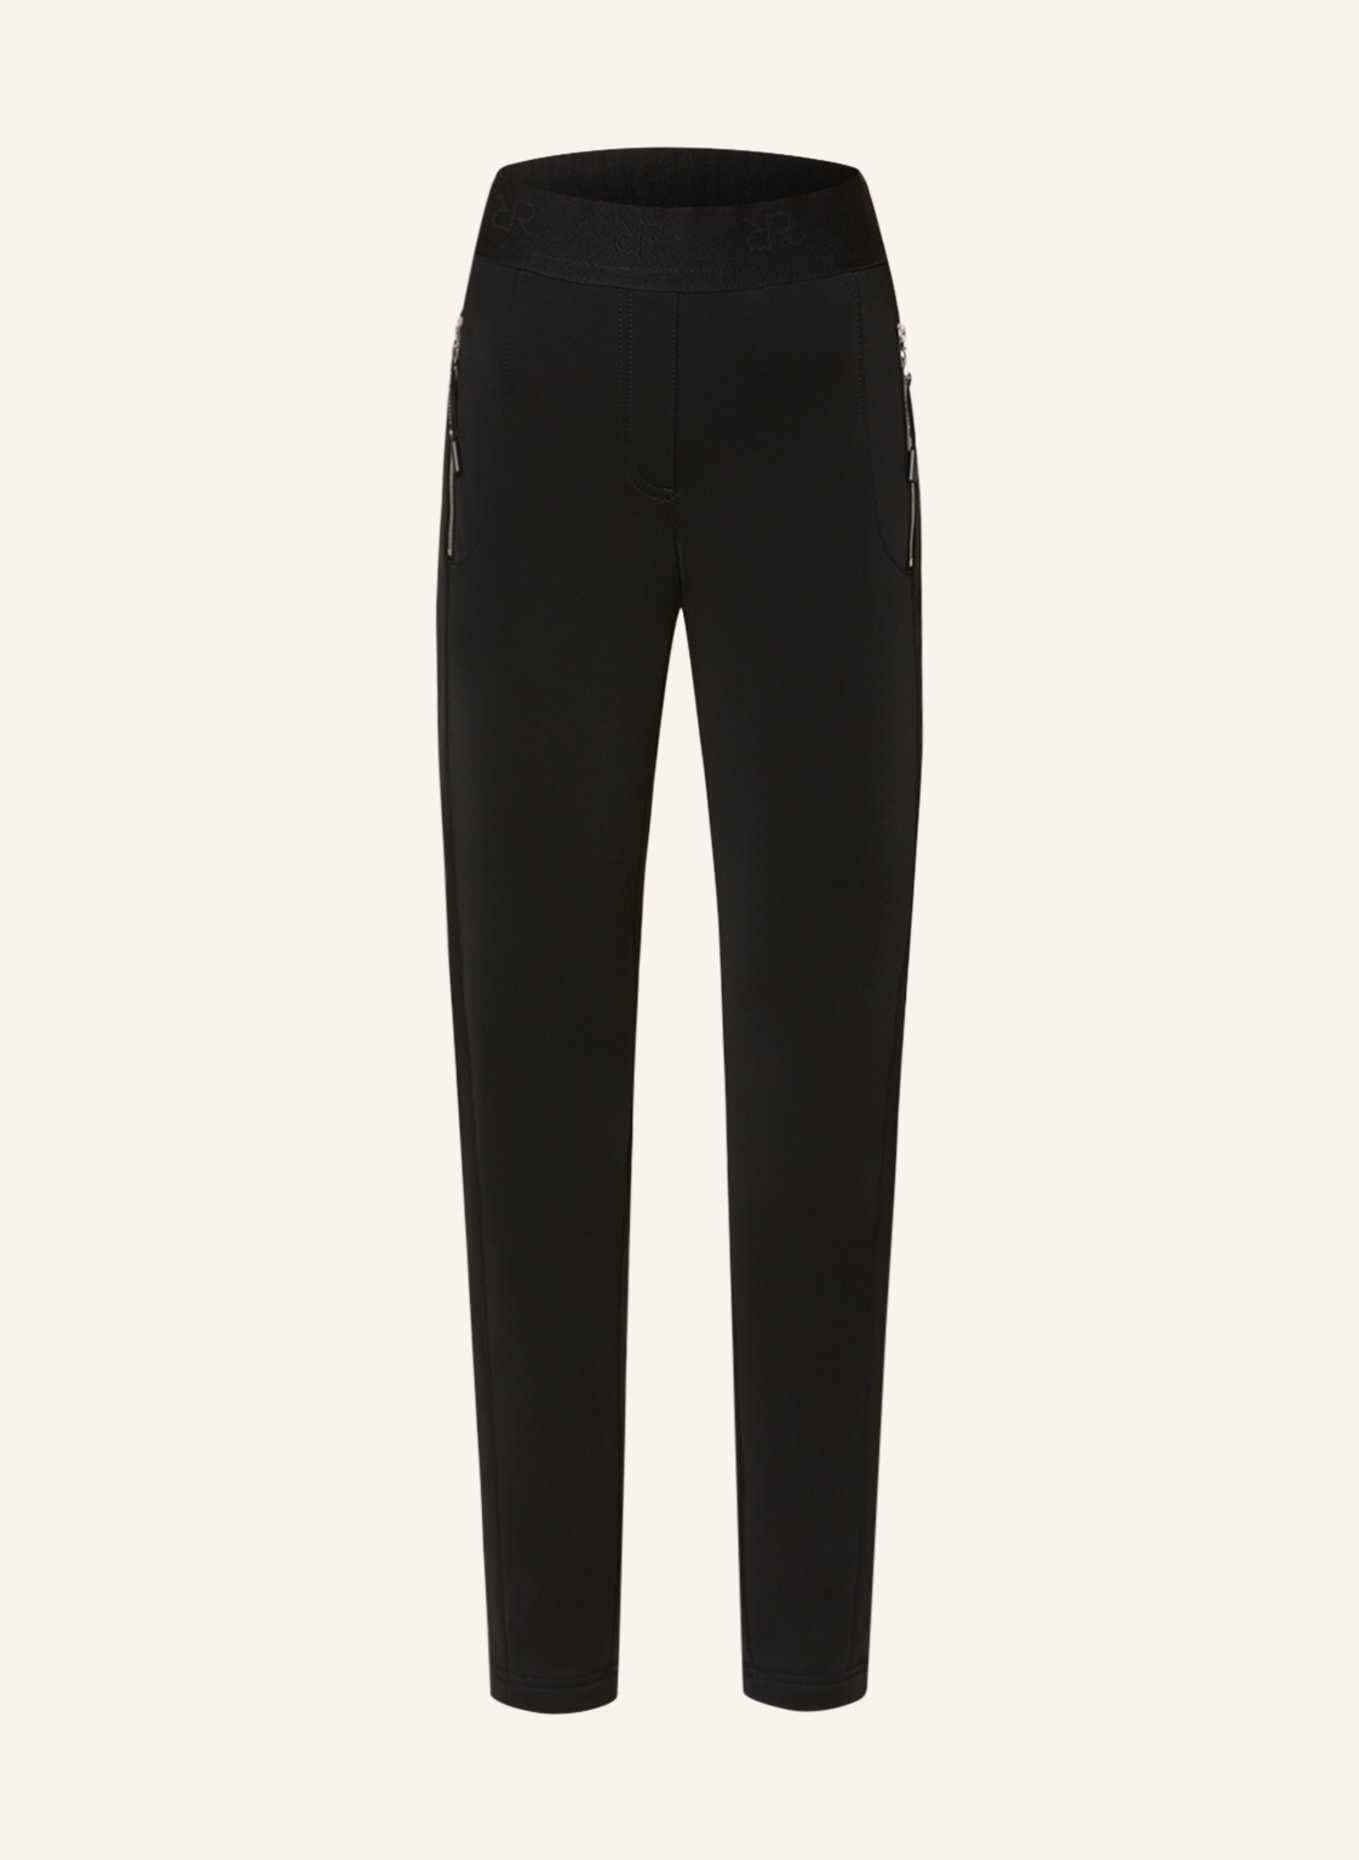 RAFFAELLO ROSSI Pants in jogger style, Color: BLACK (Image 1)